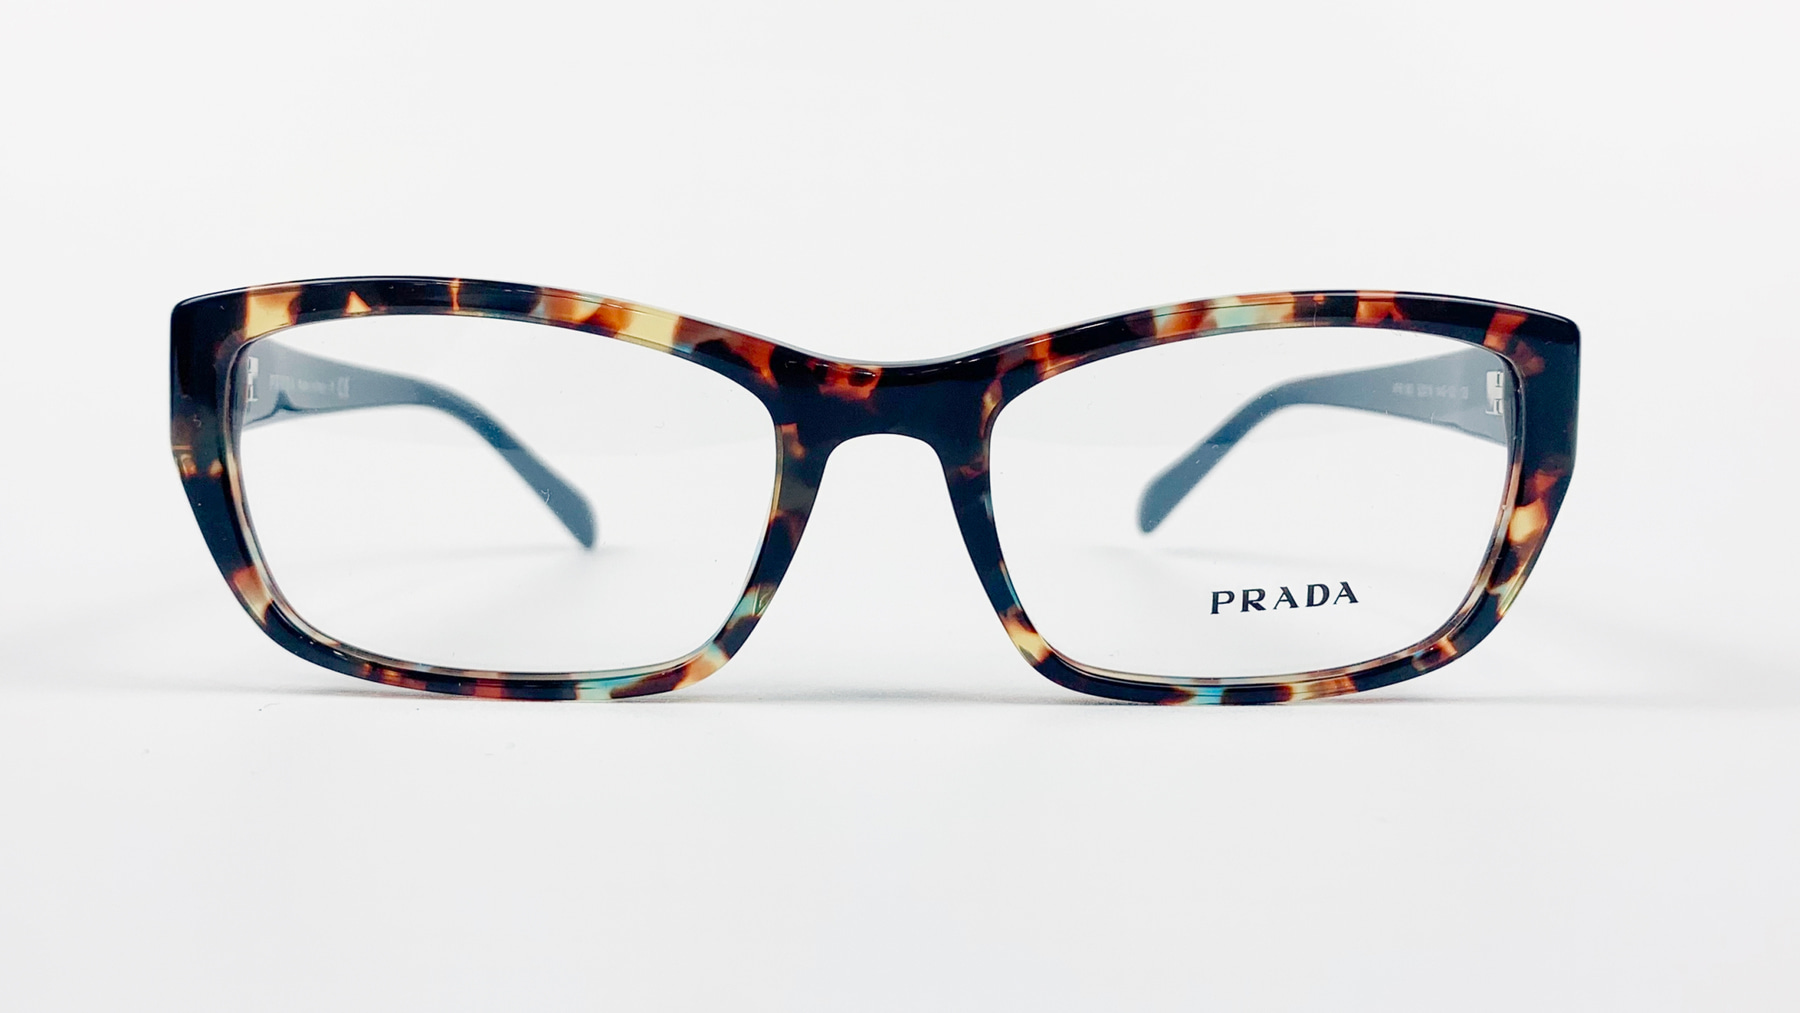 PRADA VPR 18O, Korean glasses, sunglasses, eyeglasses, glasses